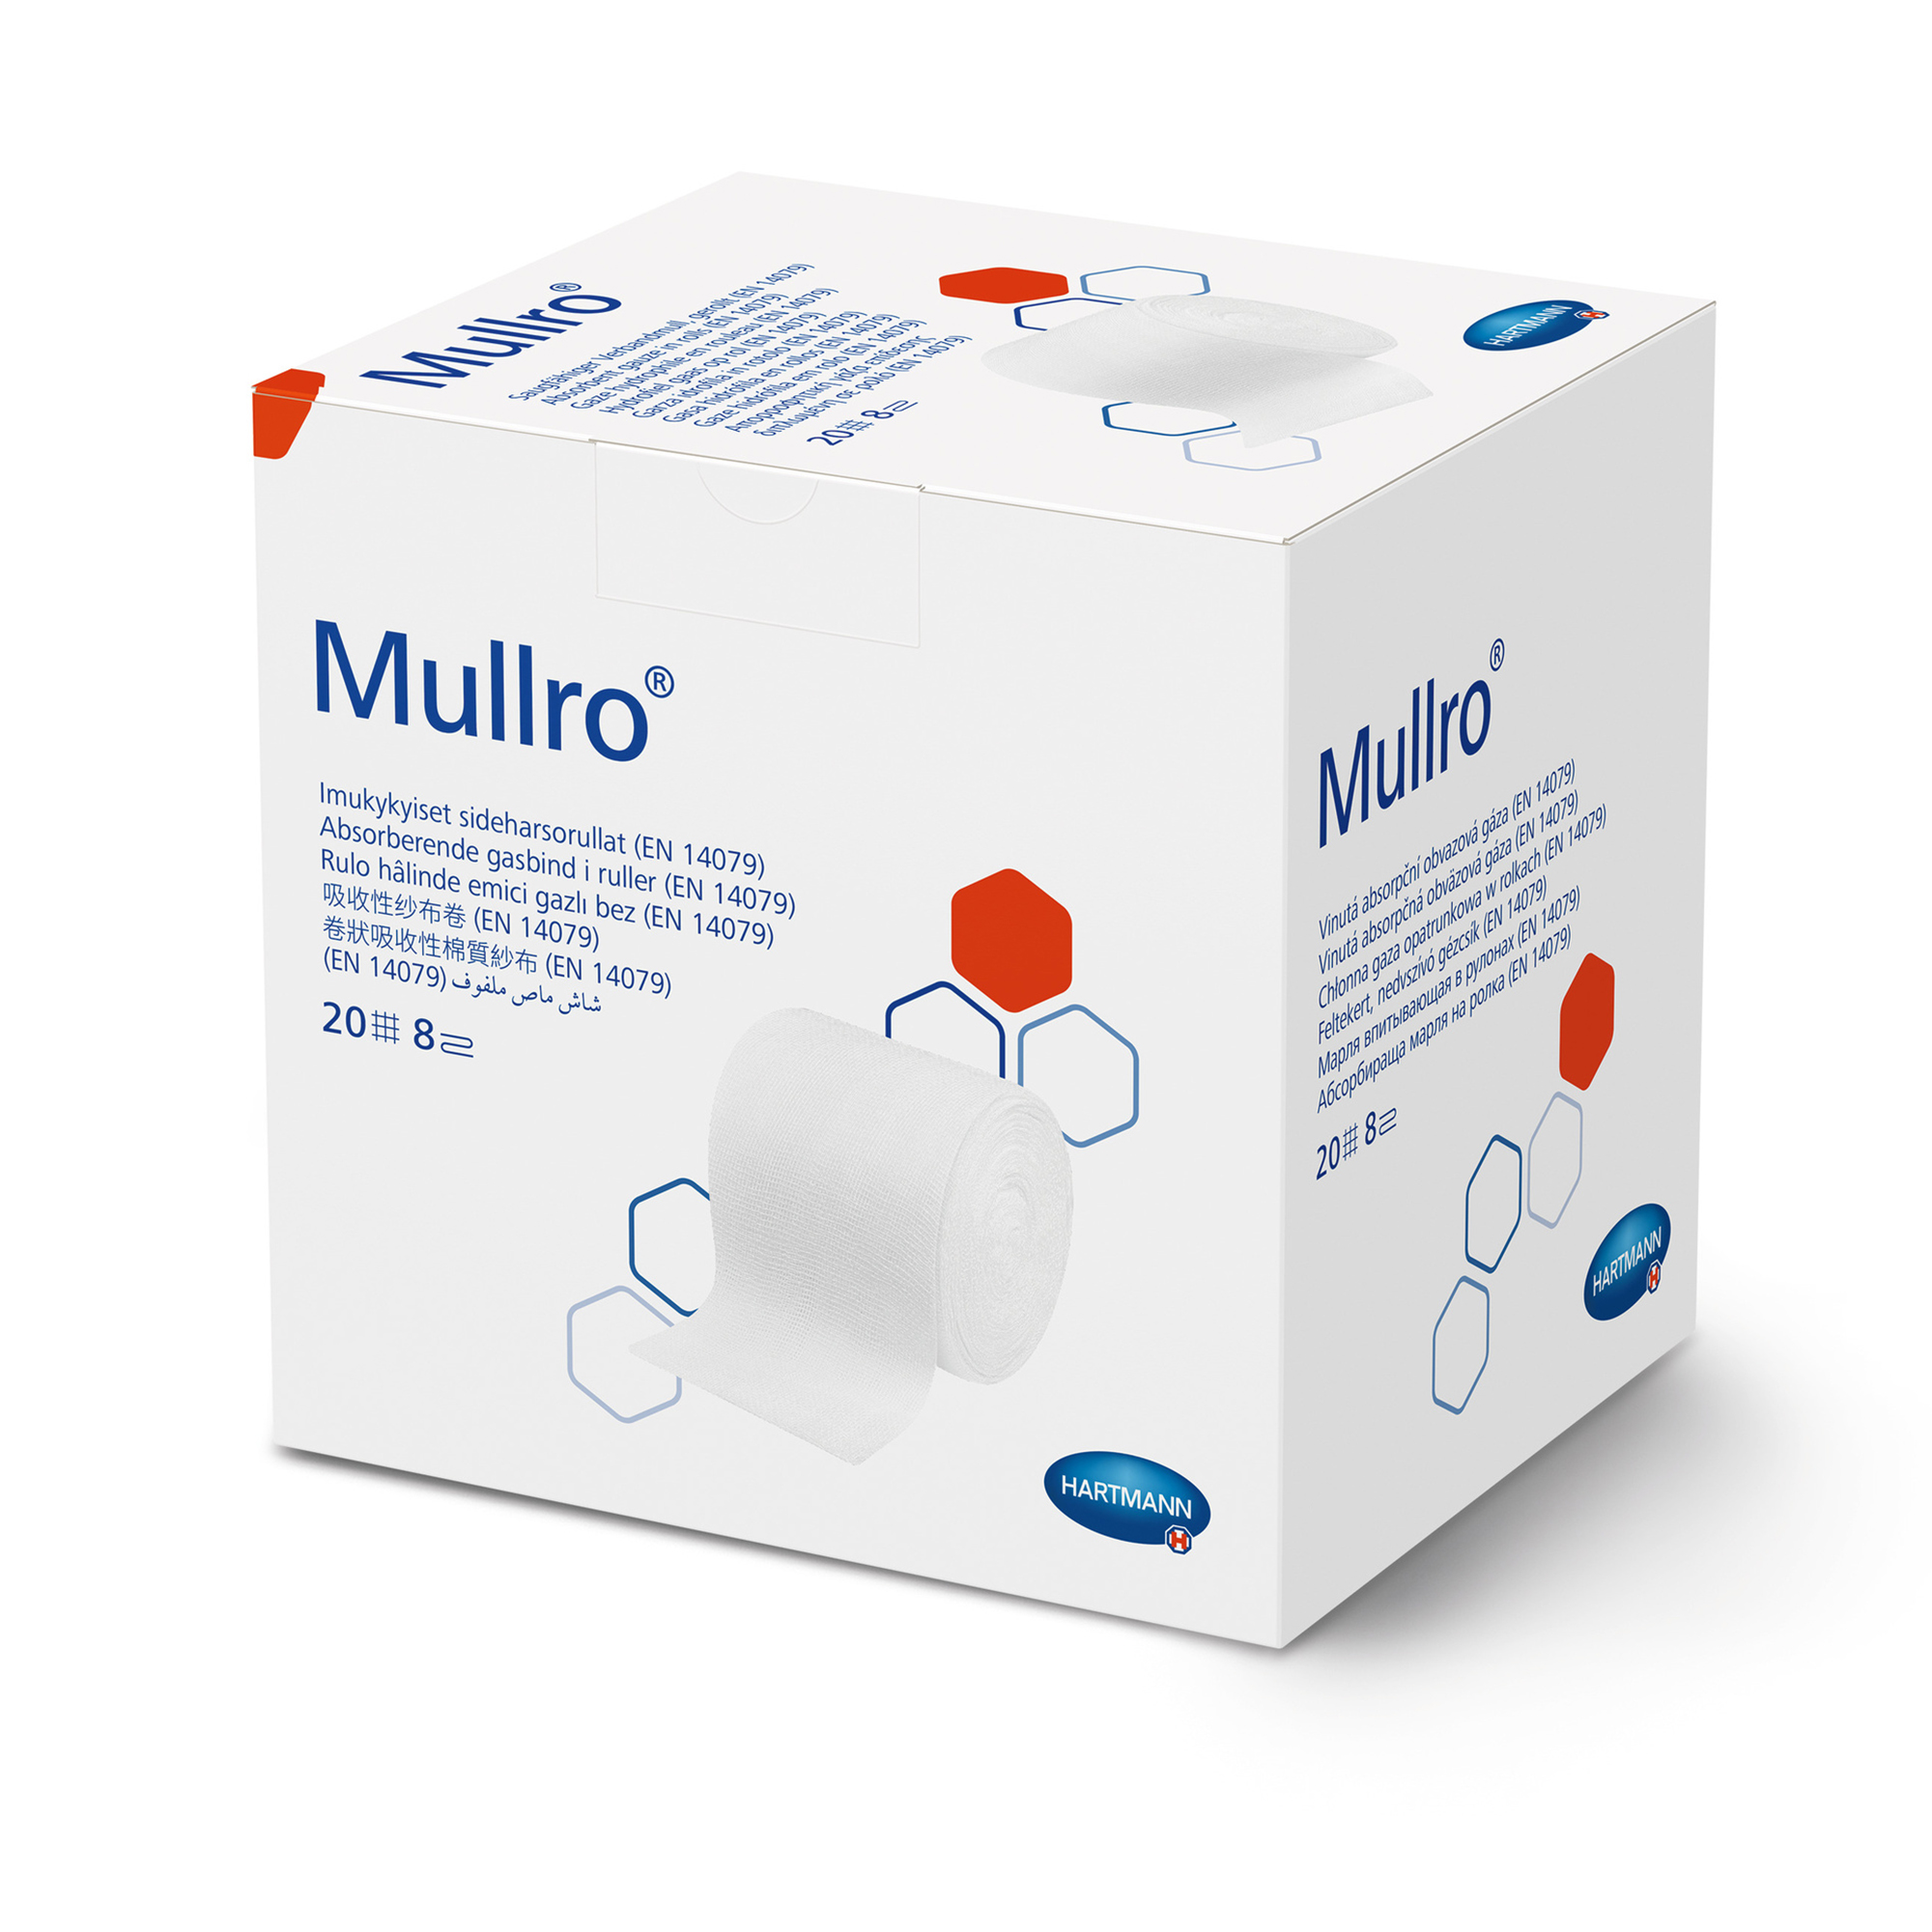 Hartmann Mullro® 40 m non-sterile, in removal boxes